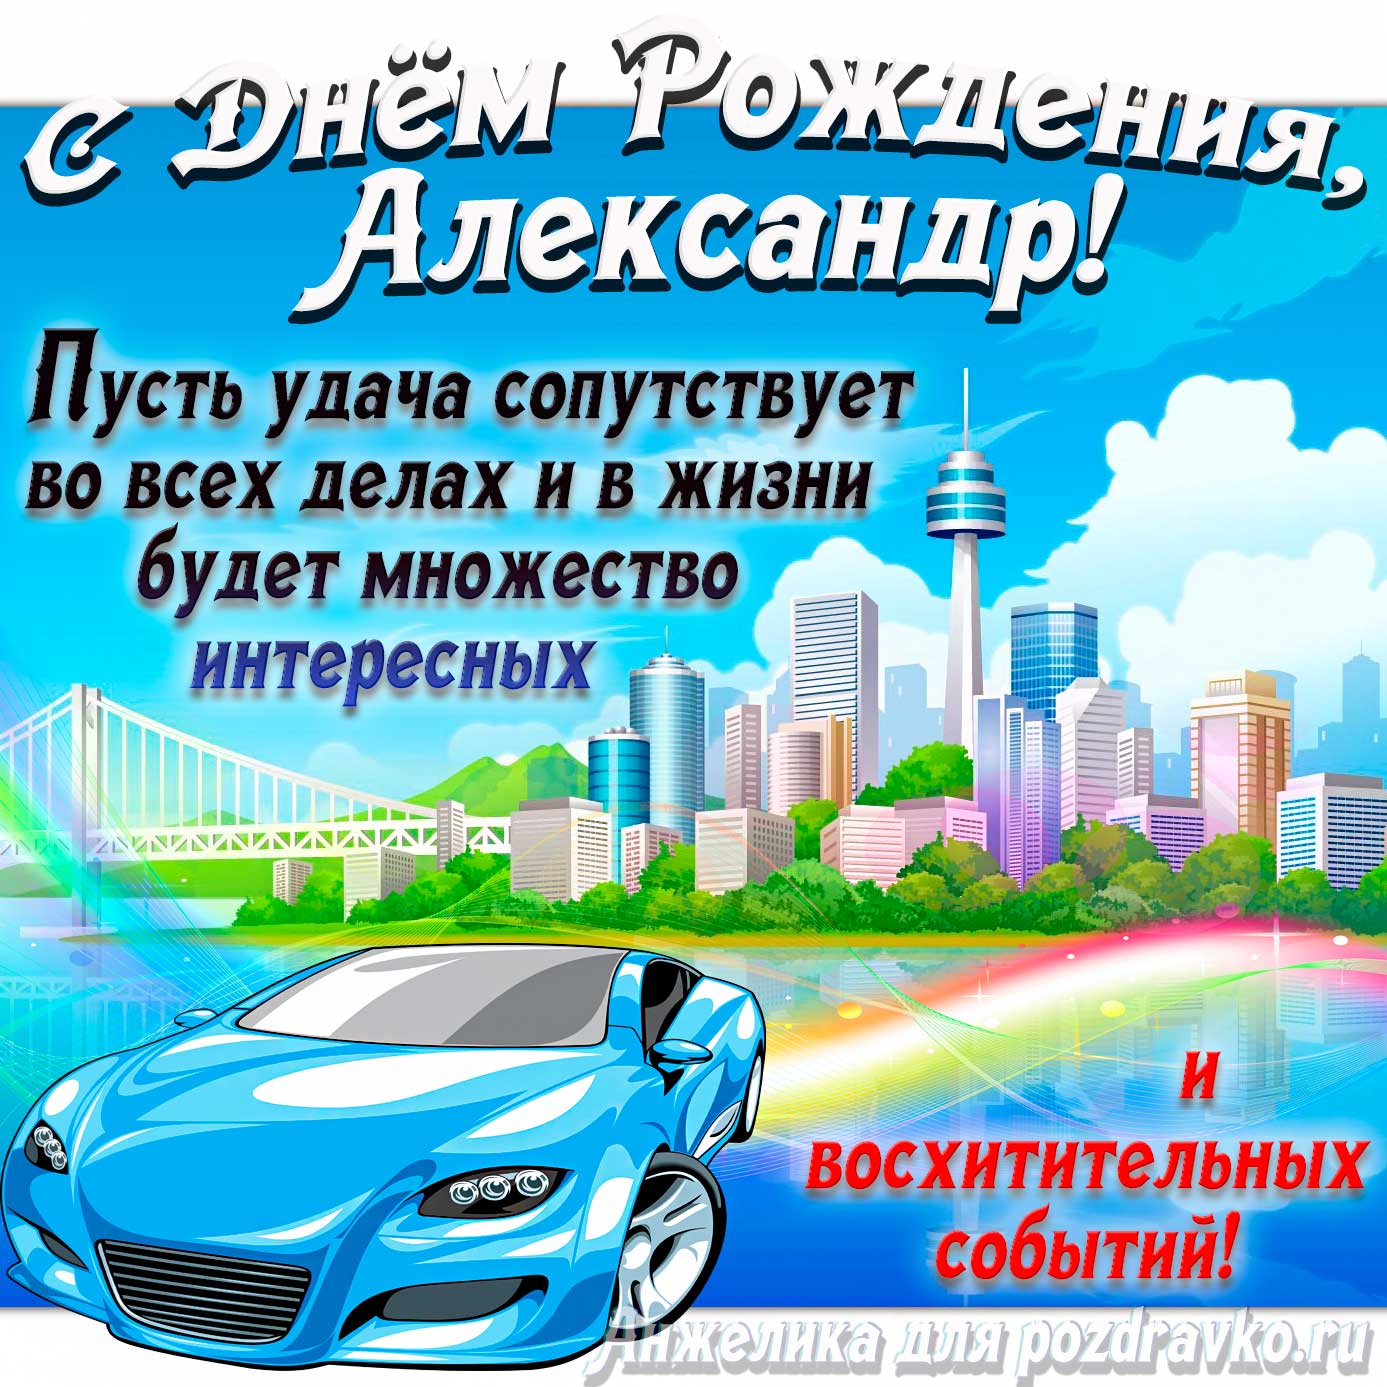 Открытка - с Днём Рождения Александр с голубой машиной и пожеланием. Скачать бесплатно или отправить картинку.